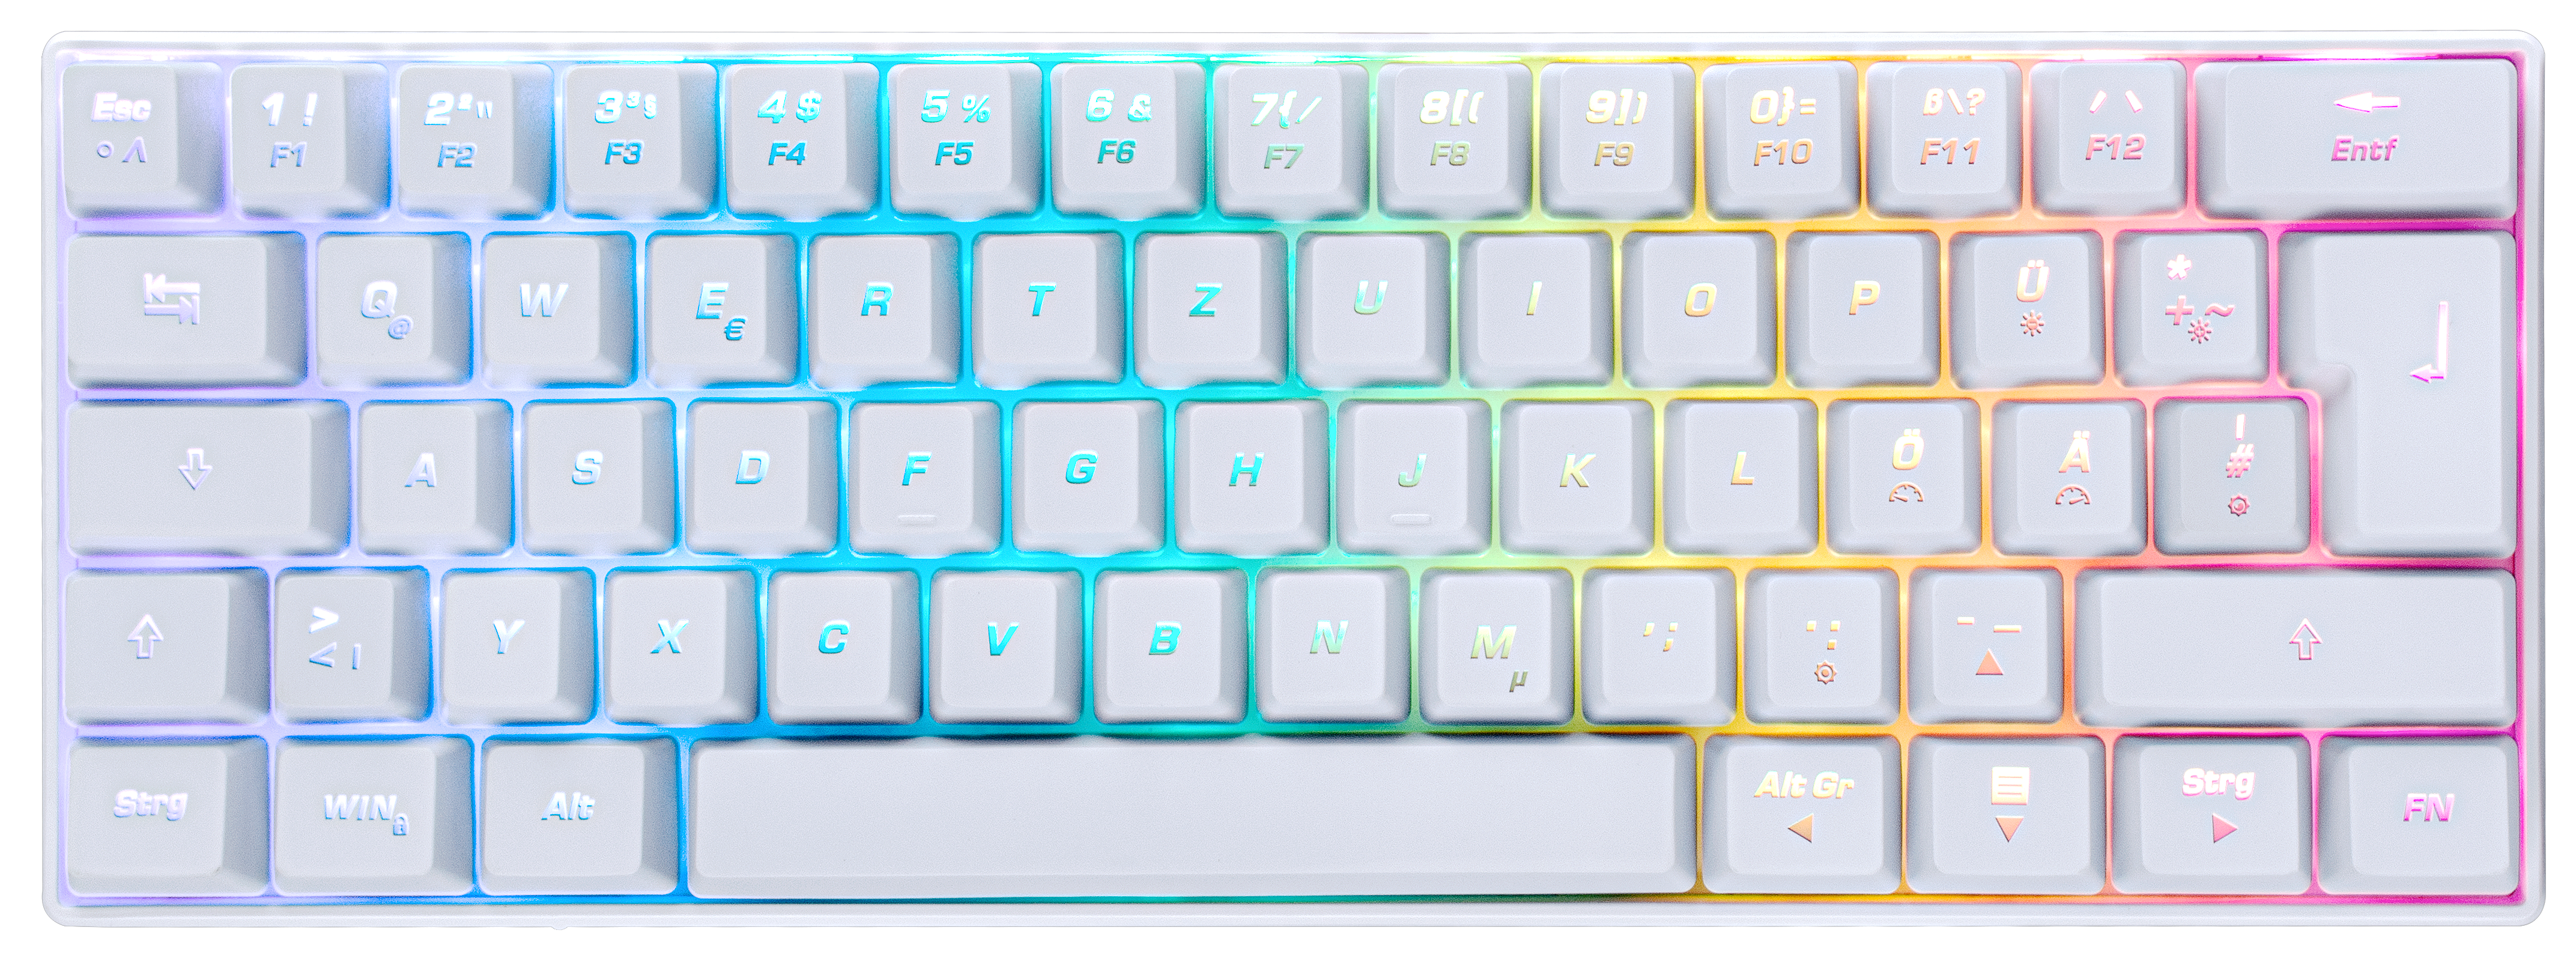 ISY IGK-5000-WT Mini Size, , kabelgebunden, Weiß Mechanisch, Gaming Tastatur